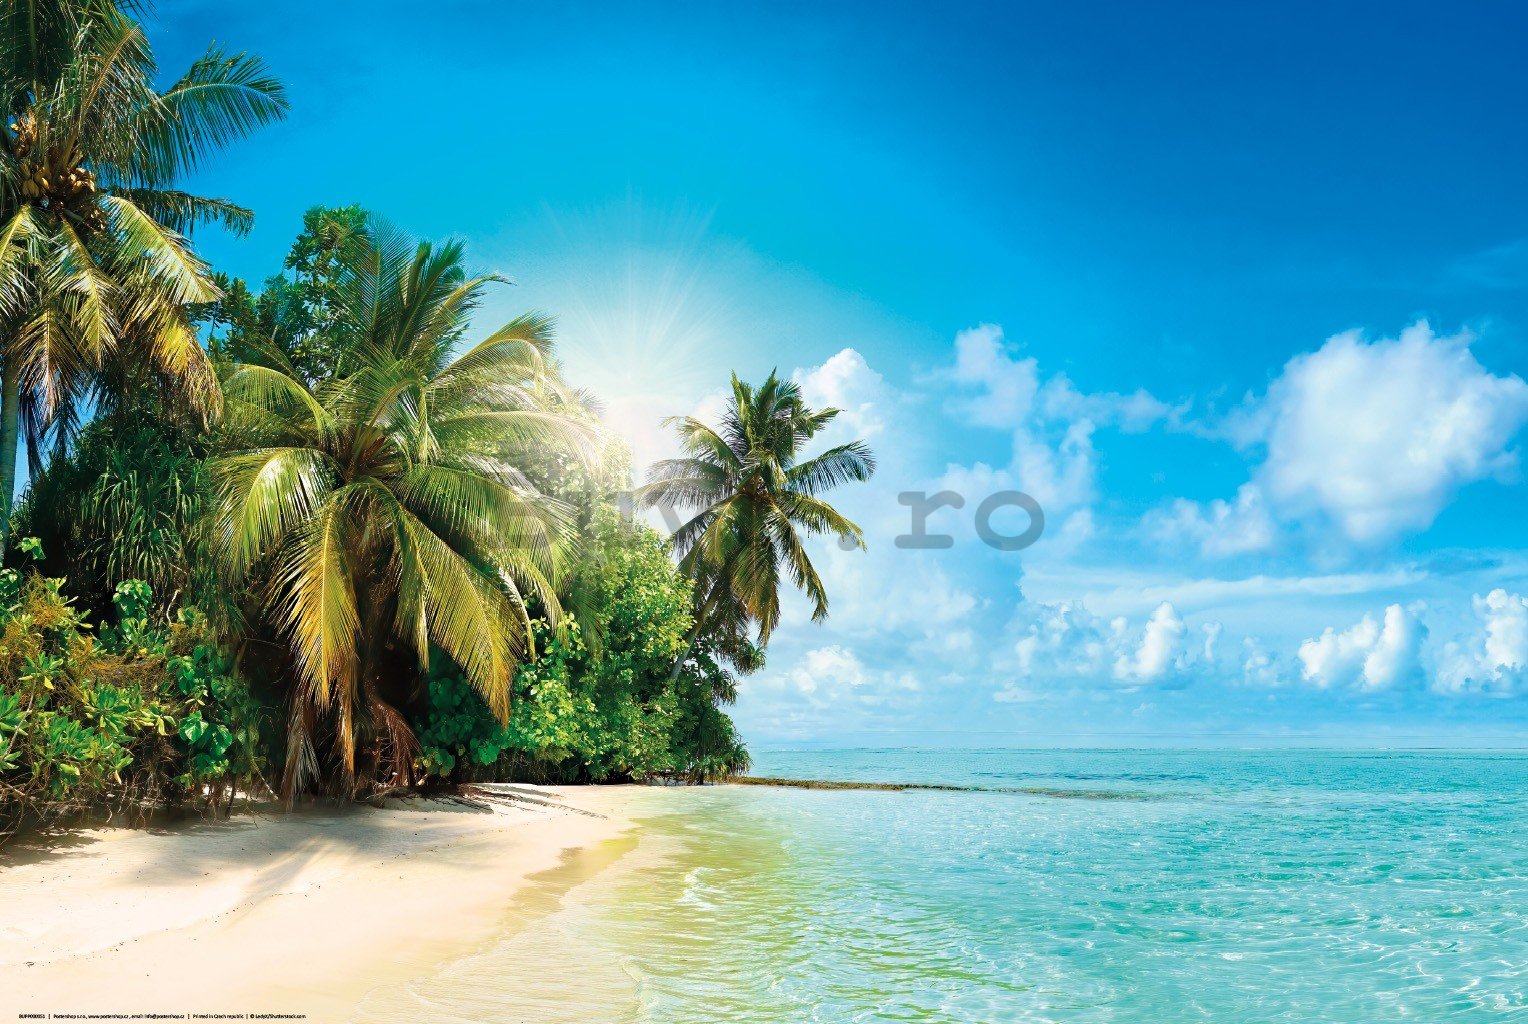 Poster: Plaja tropicală însorită